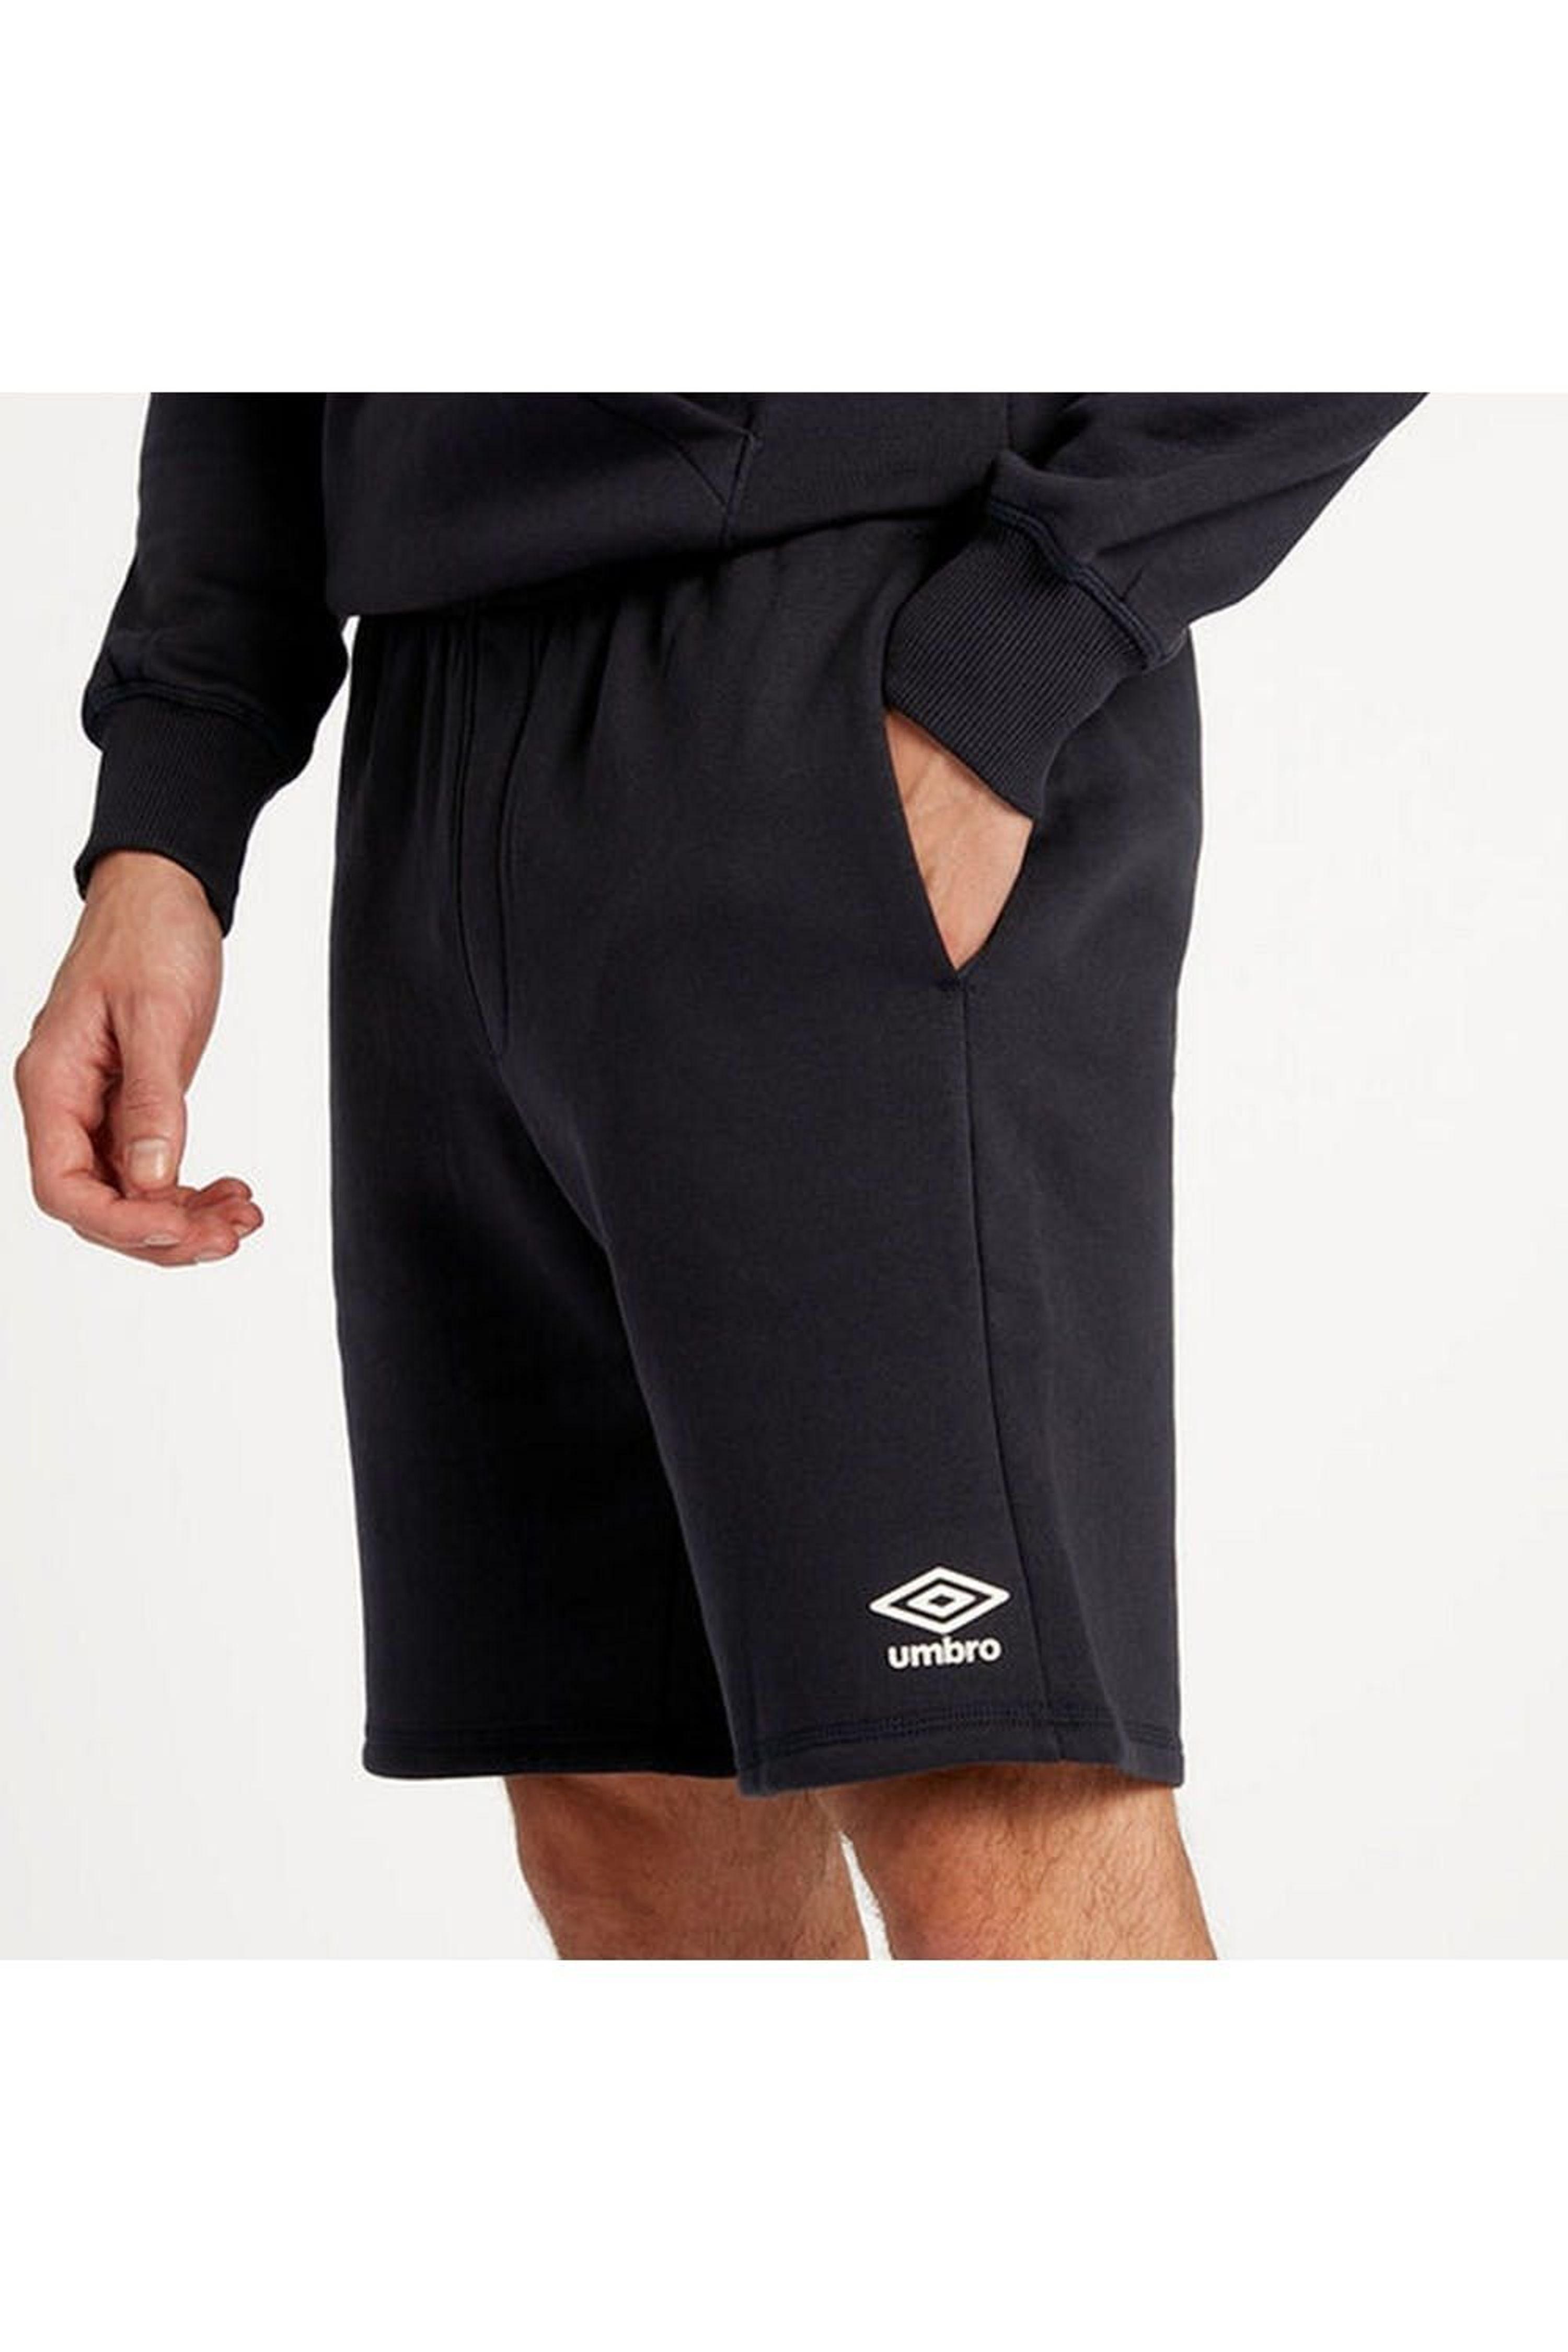 Umbro Fleece Shorts in Black for Men | Lyst